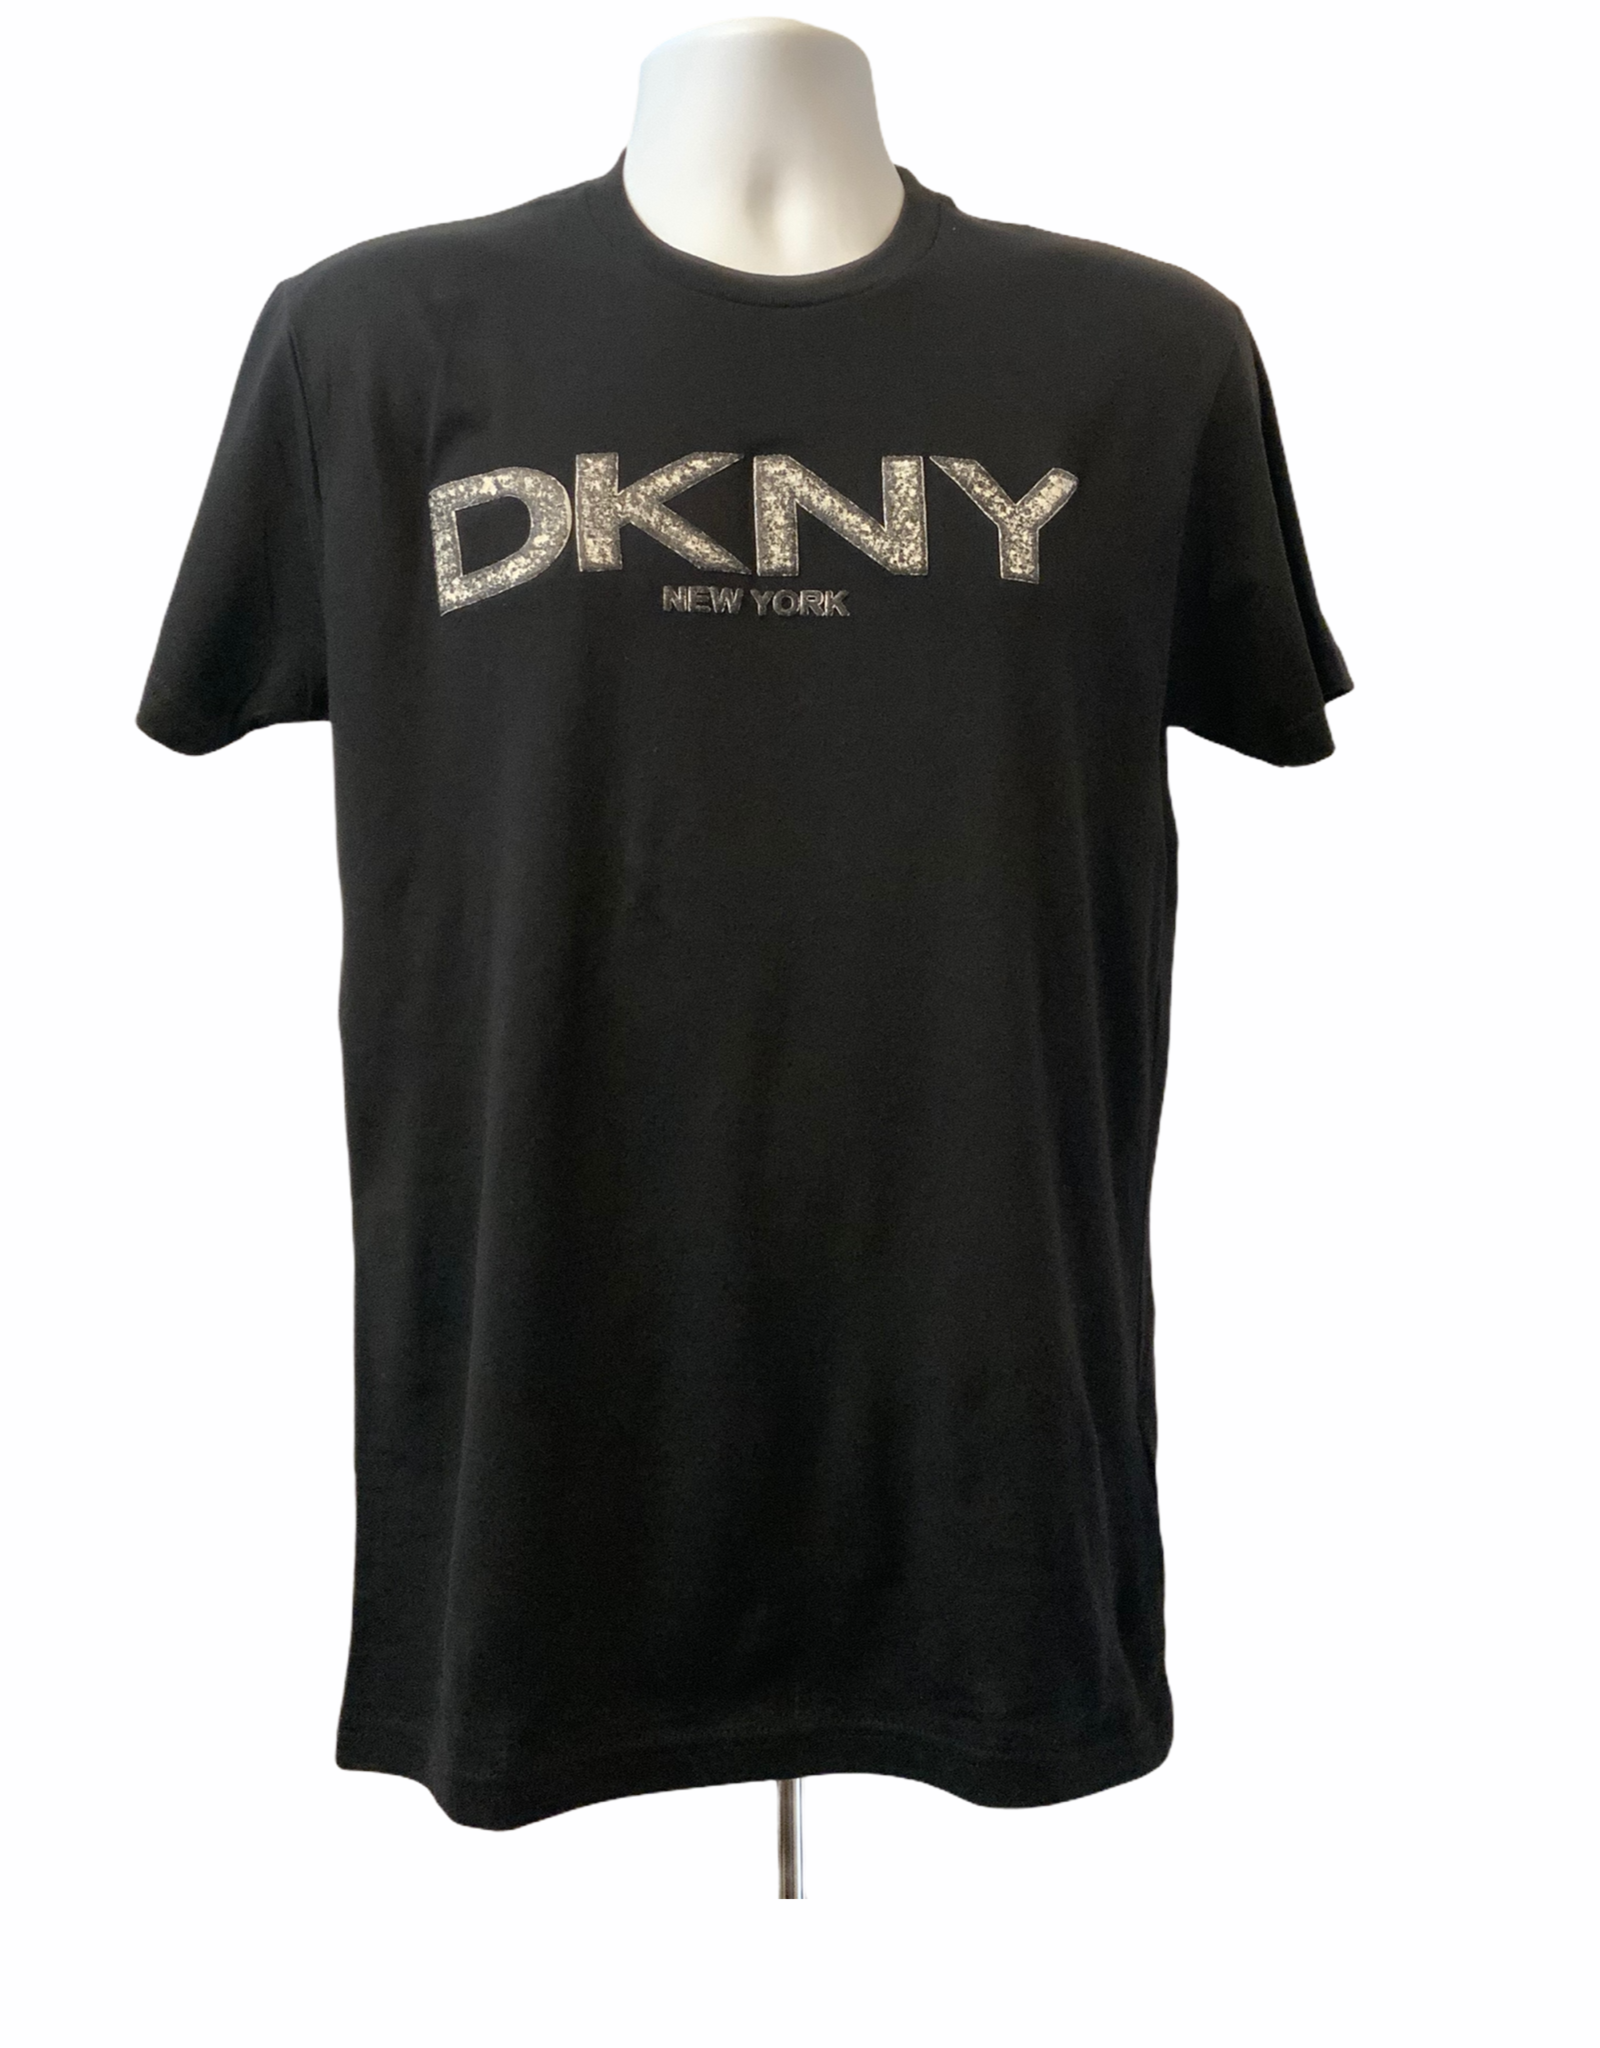 DKNY DKNY Tee Raised Puff Logo